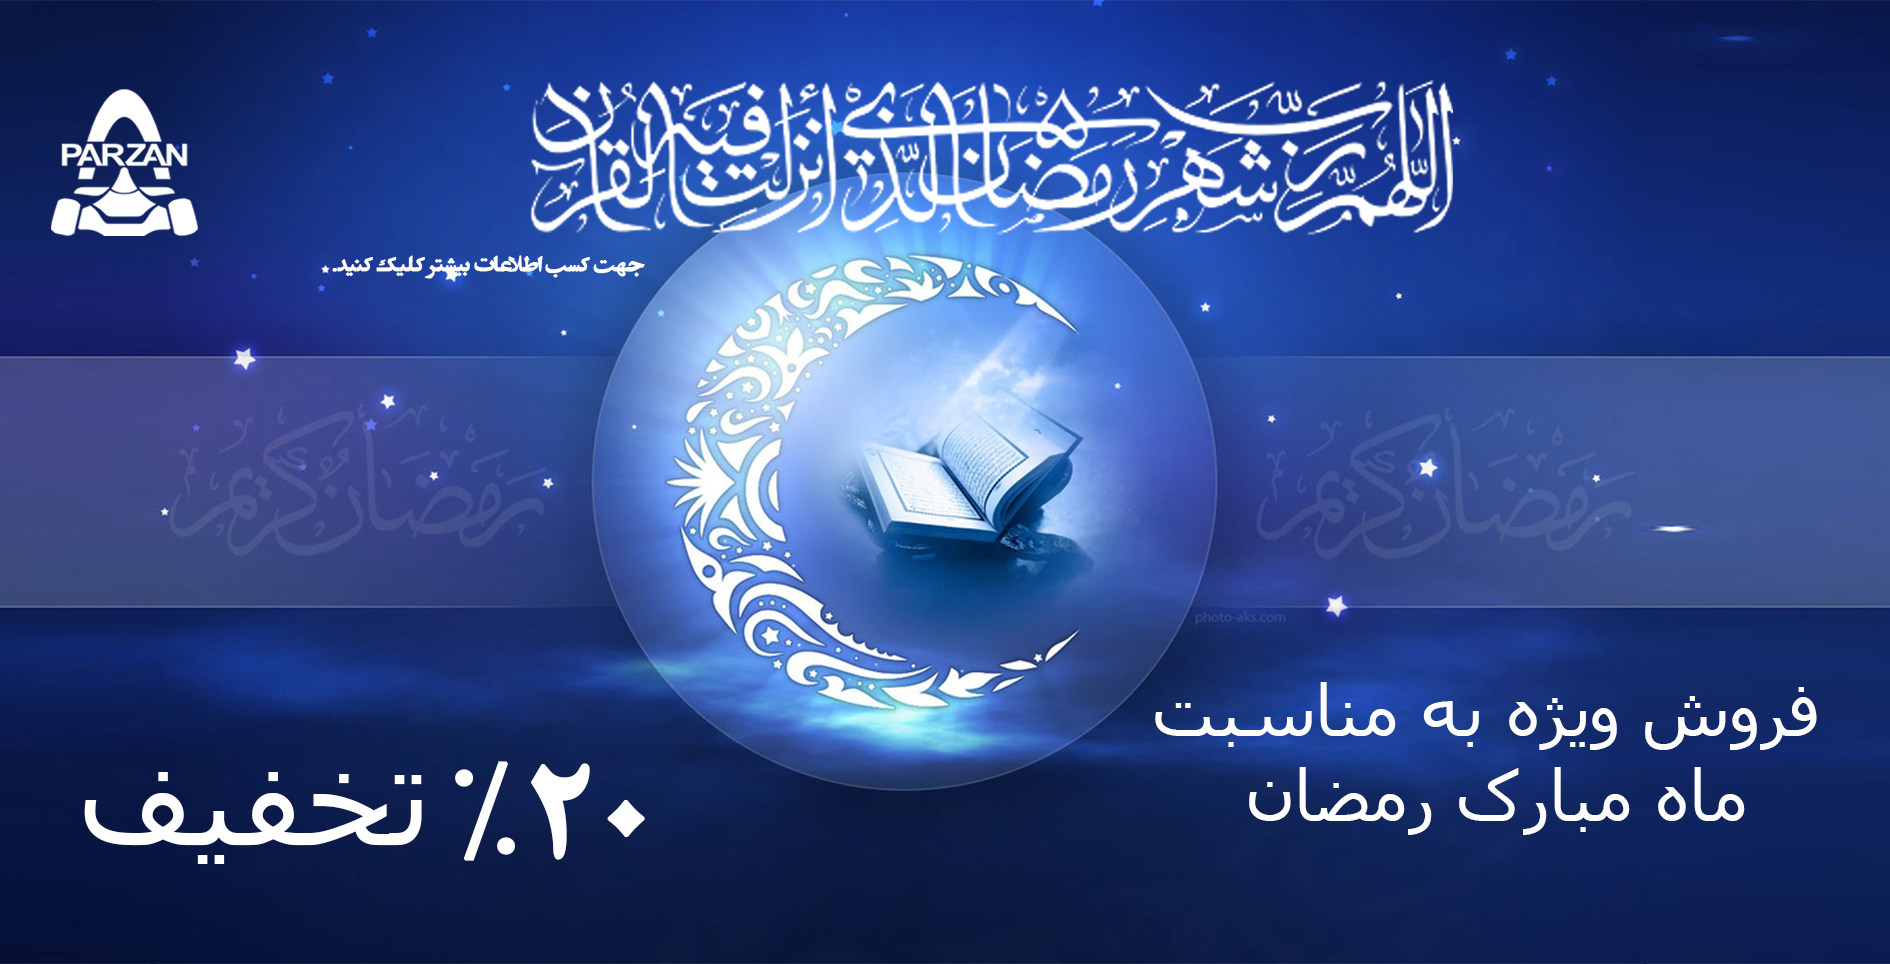 فروش ویژه ماه مبارک رمضان